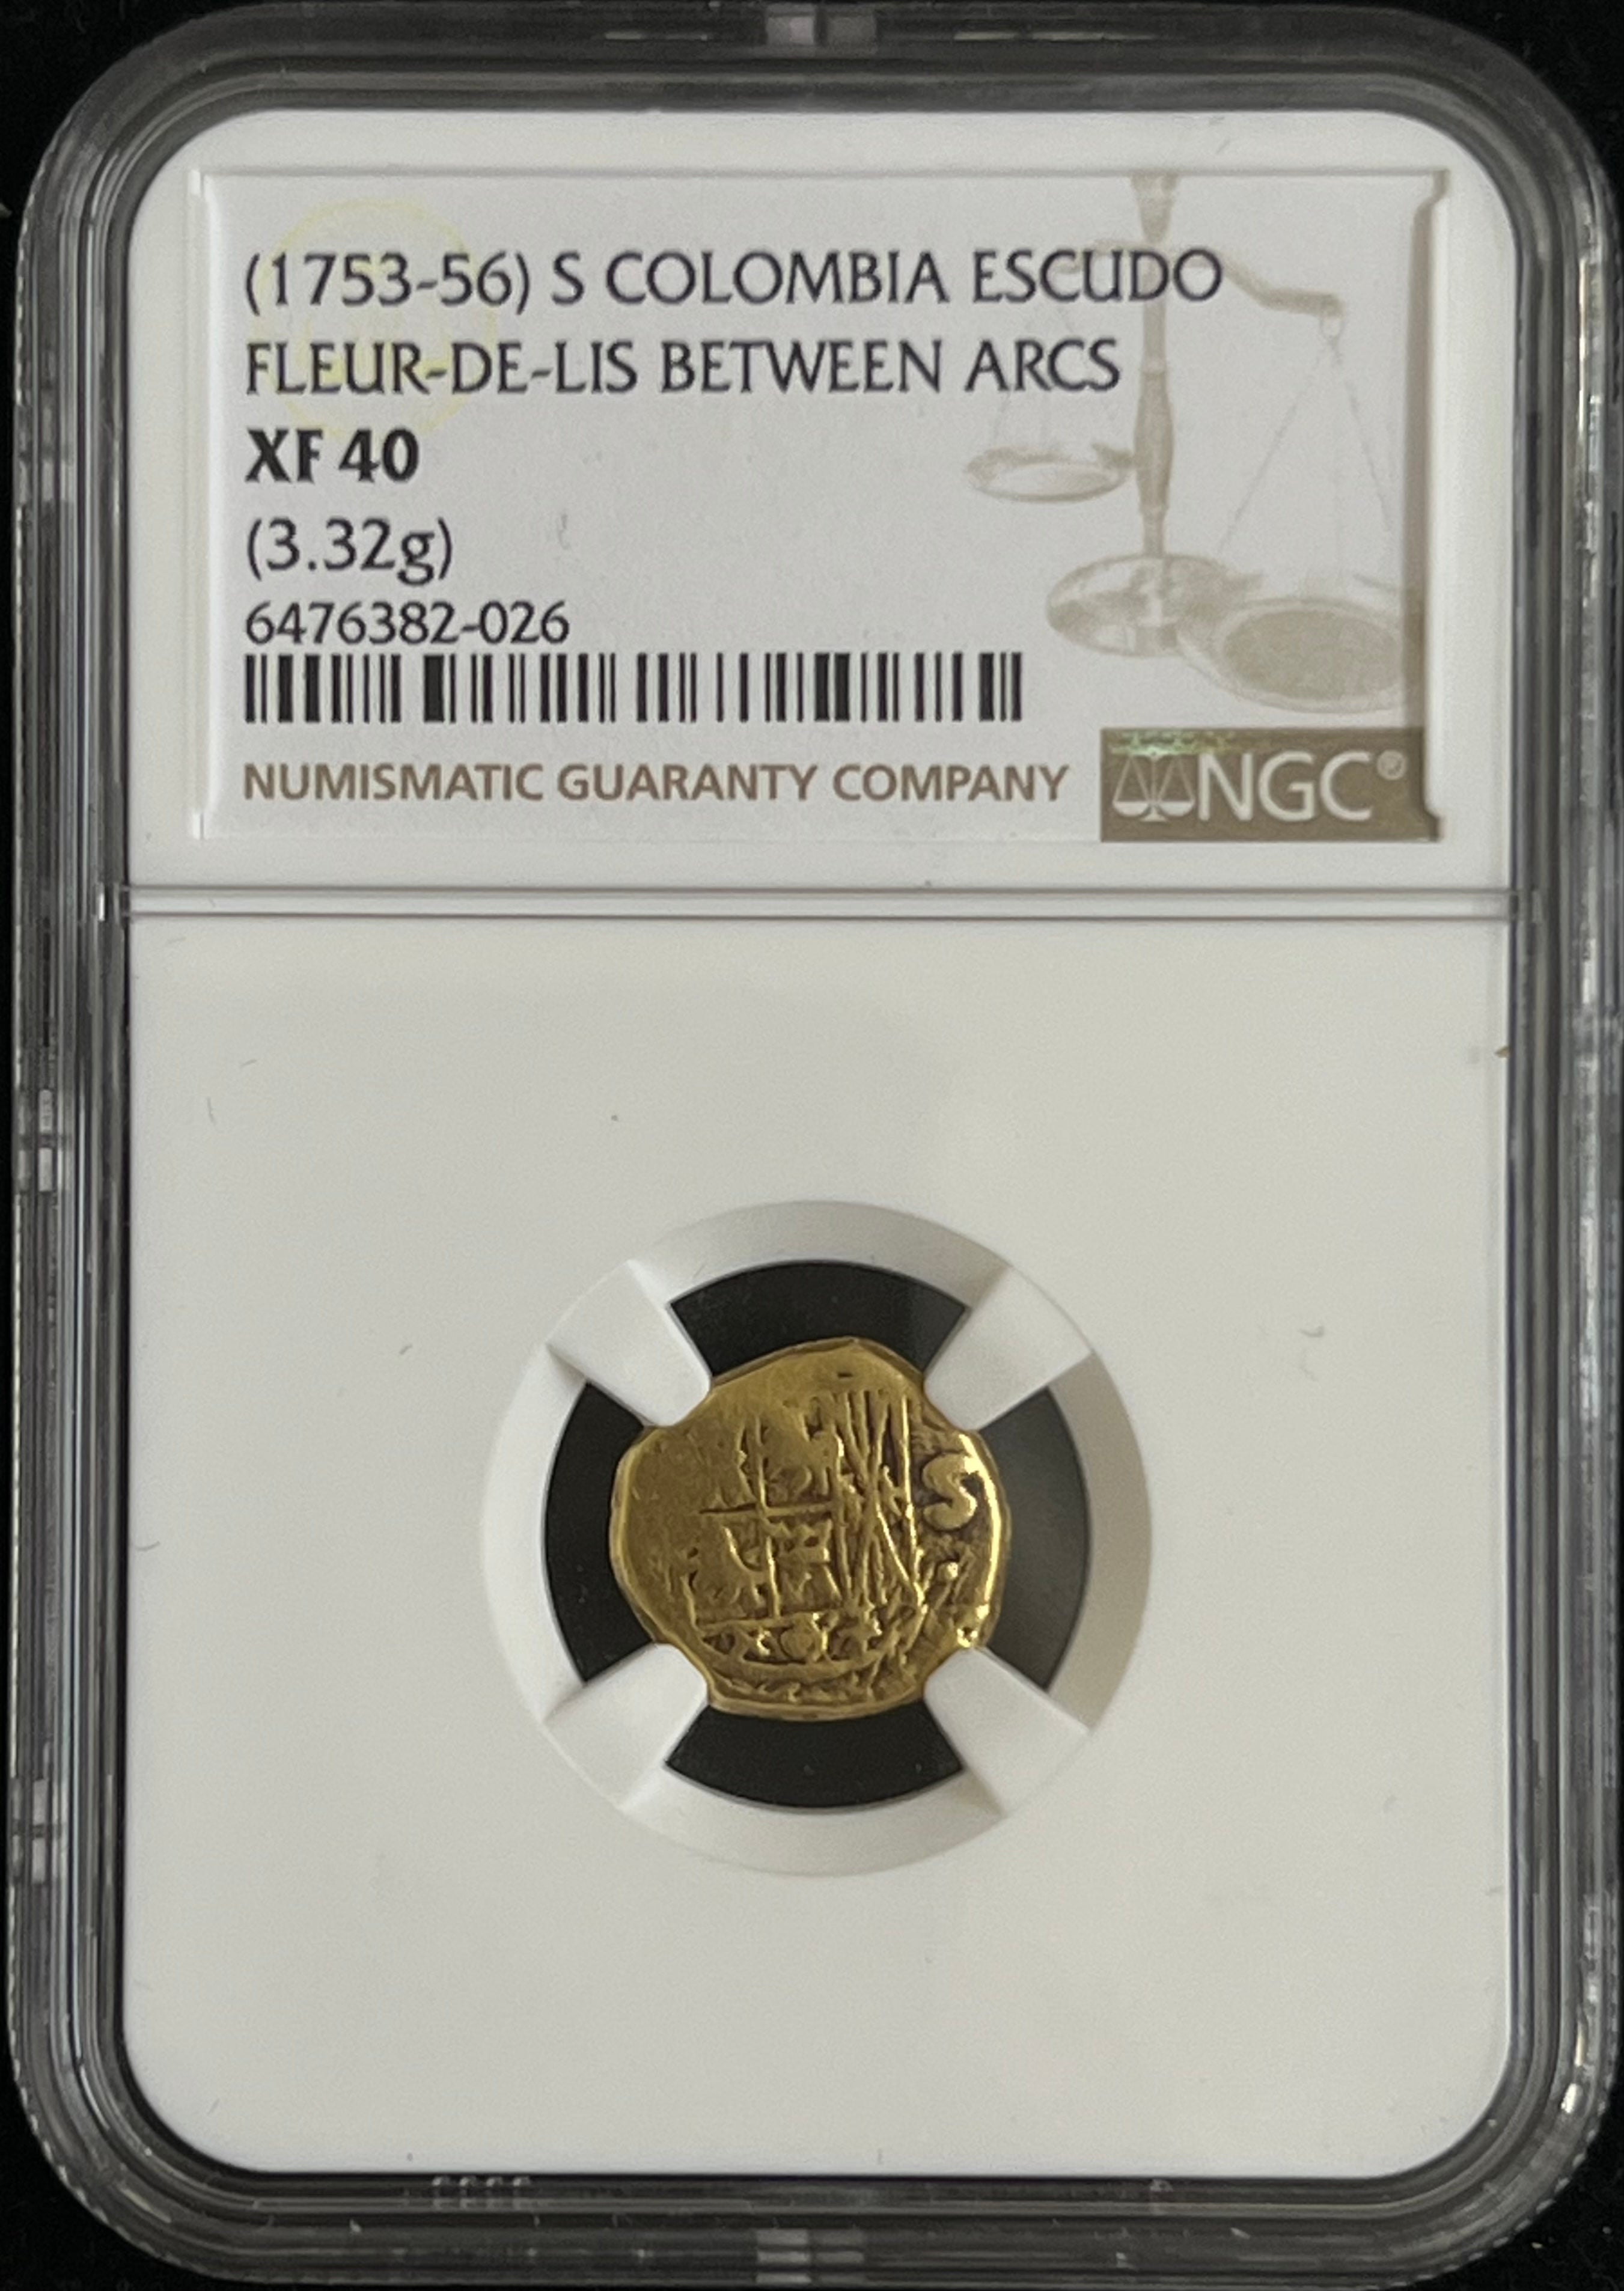 1 Escudo Bogota Colombia NGC Grade XF 40 (1753-56) Gold Coin